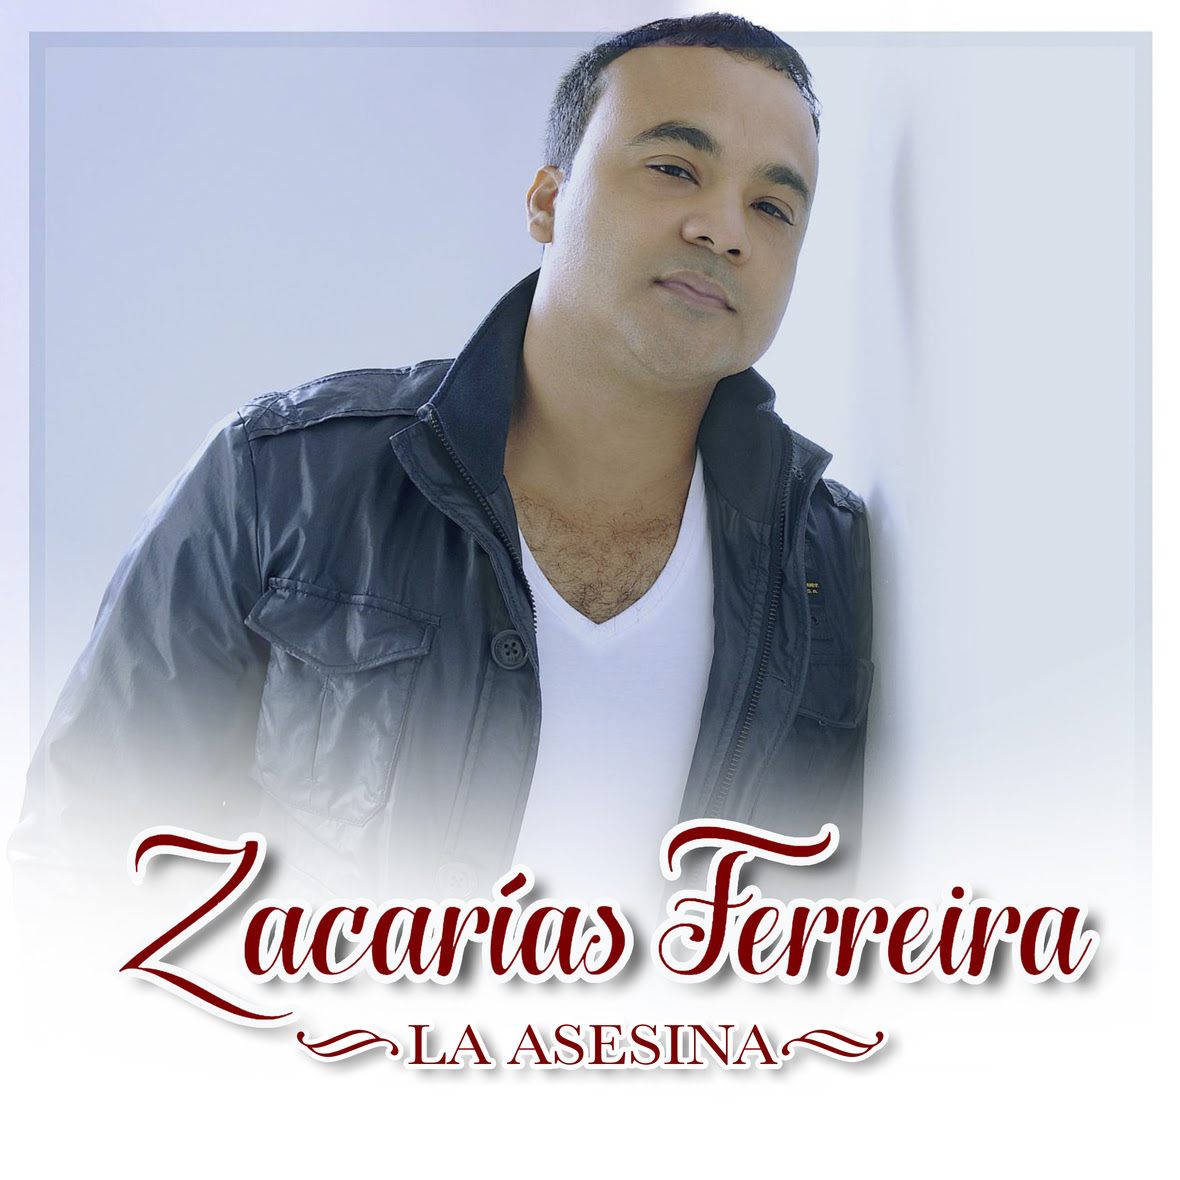 Zacarias Ferreira La Asesina